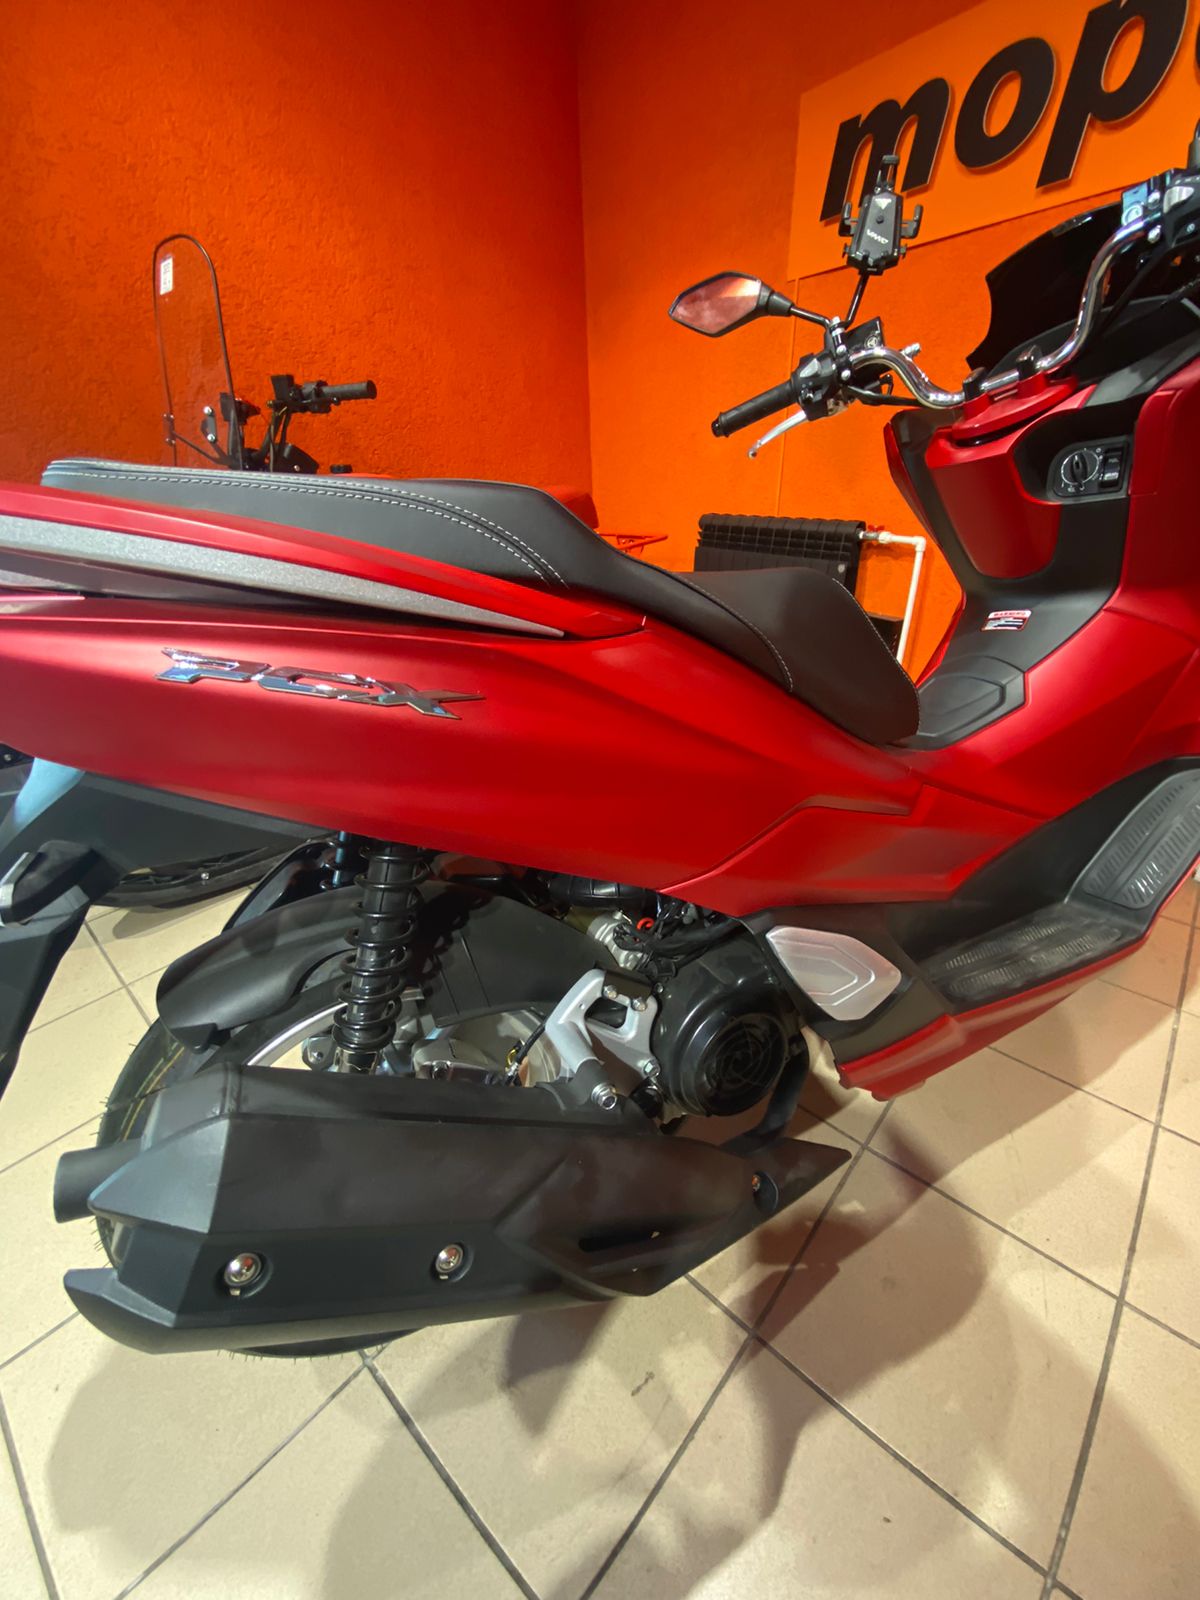 картинка Скутер VENTO PCX  | Moped24